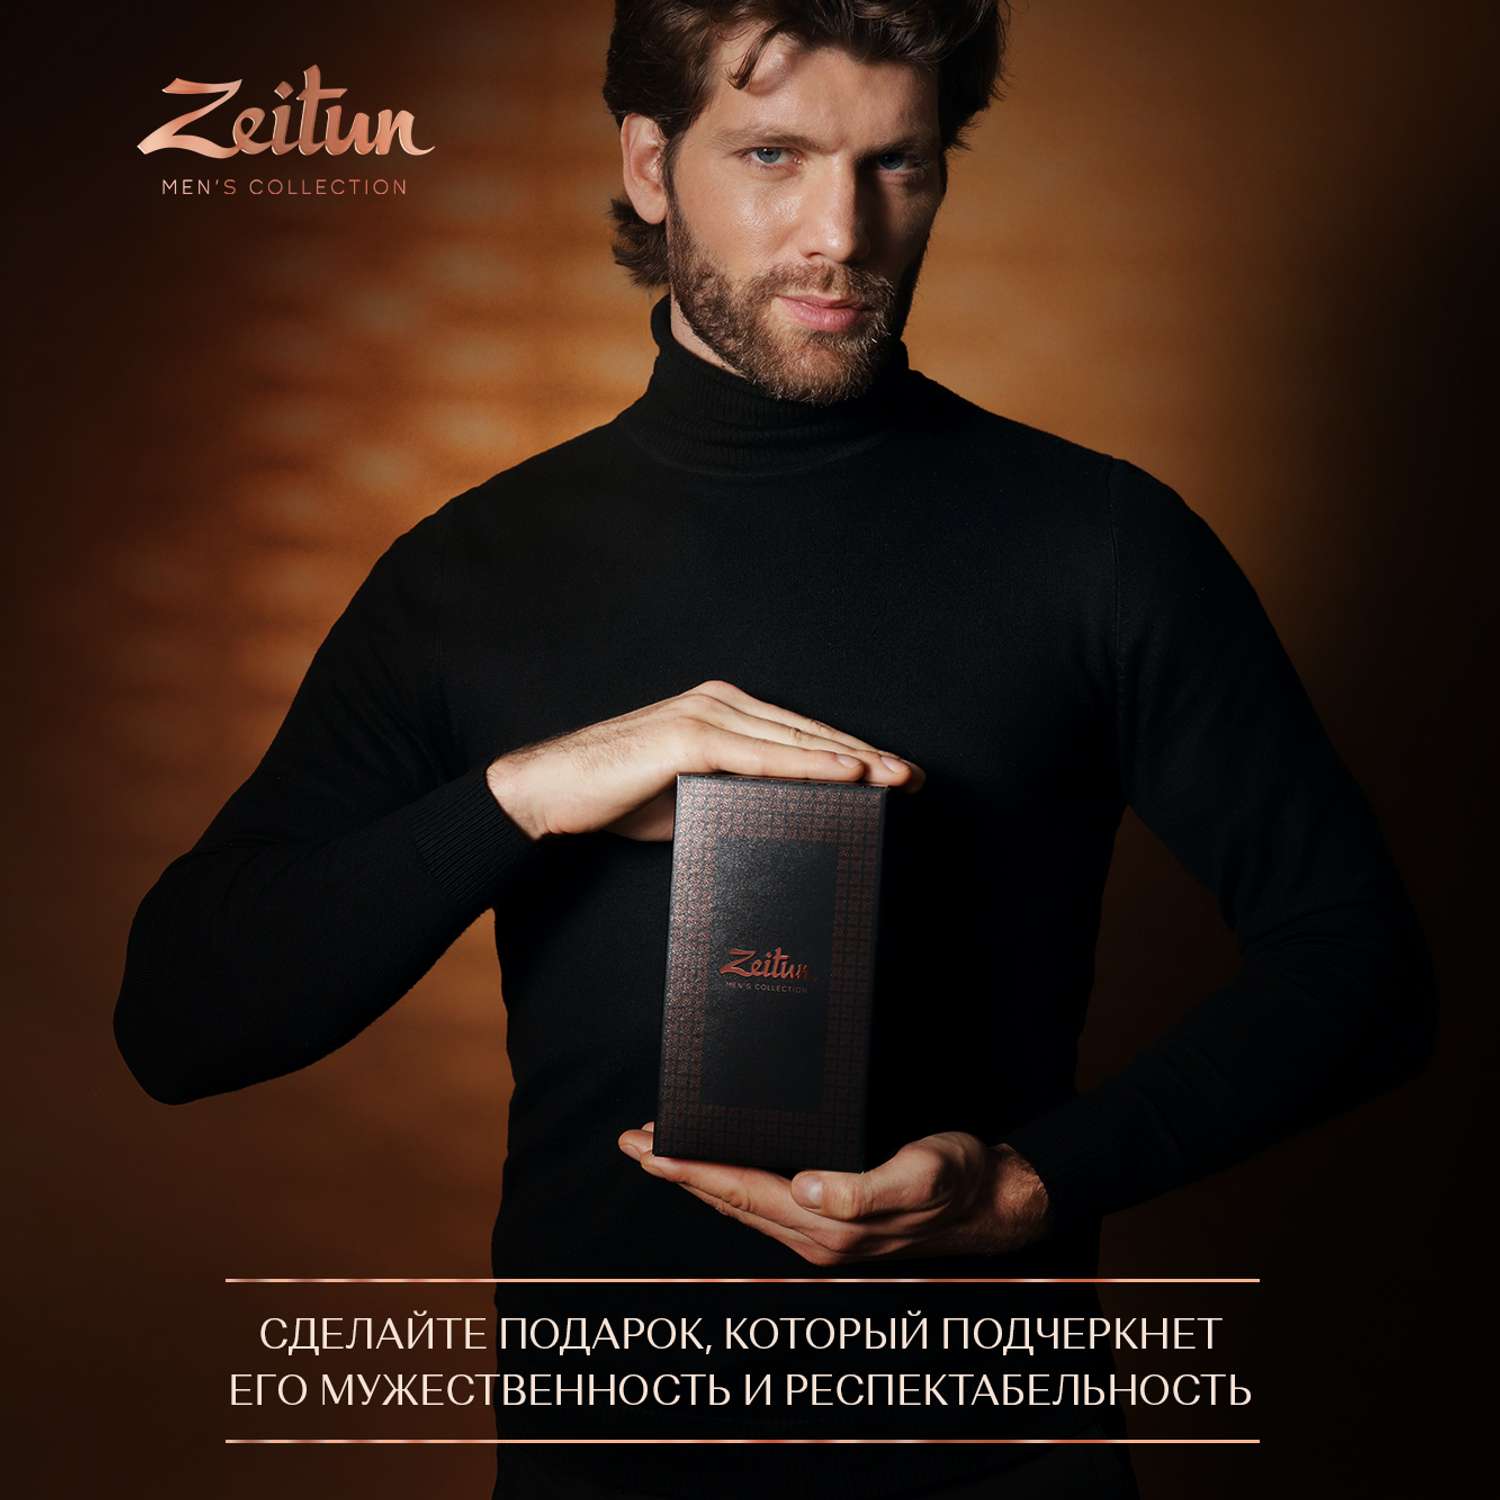 Подарочный набор Zeitun для мужчин Практичный подход шампунь гель для душа крем для бритья - фото 12